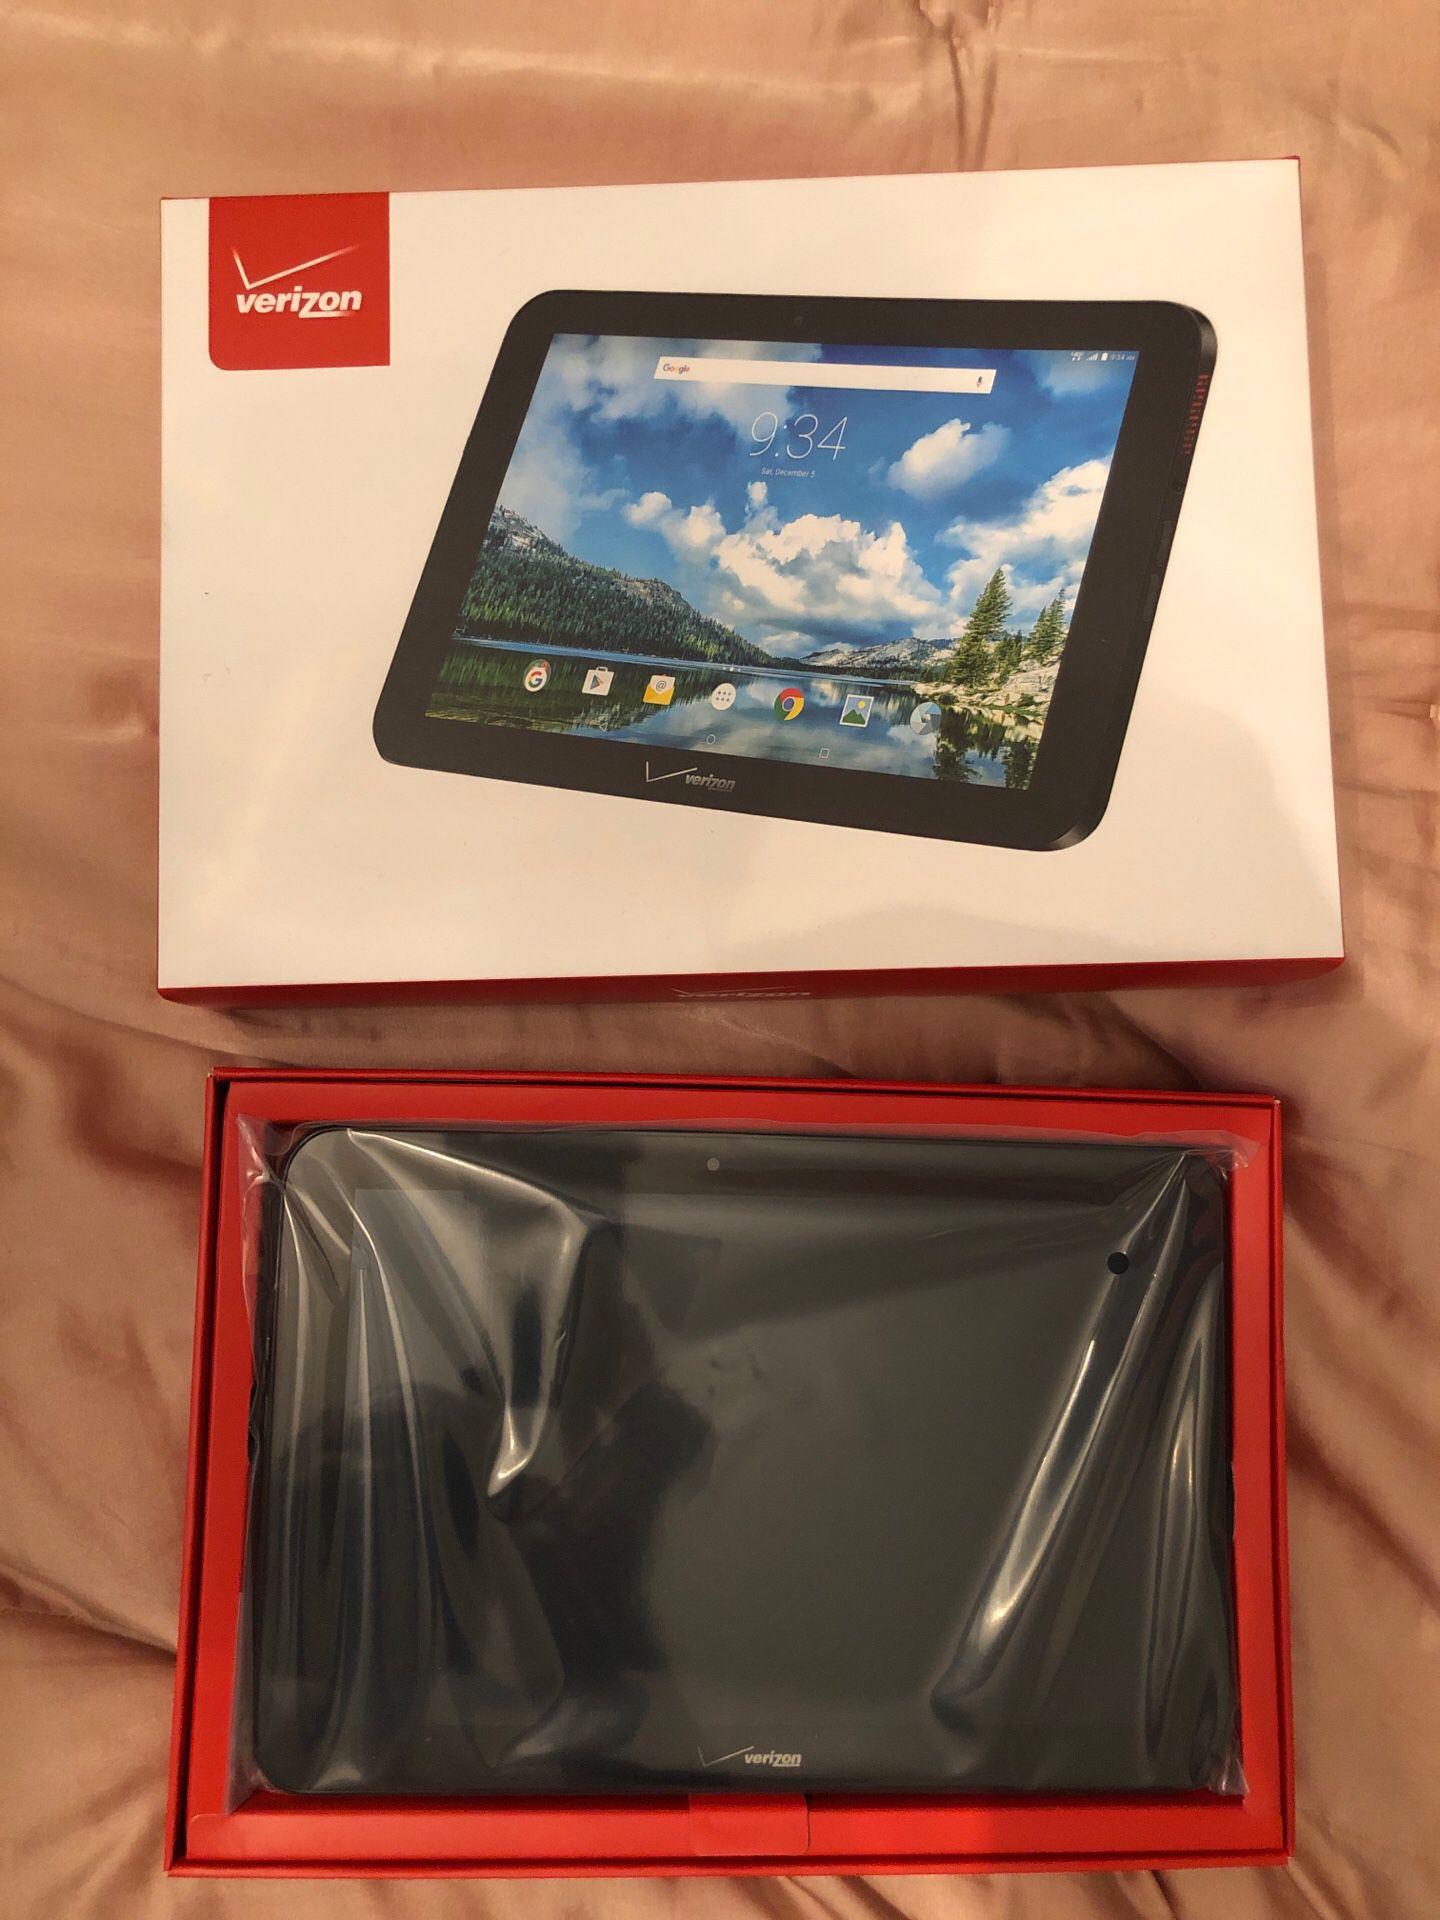 New in box Verizon Ellipsis 10” tablet